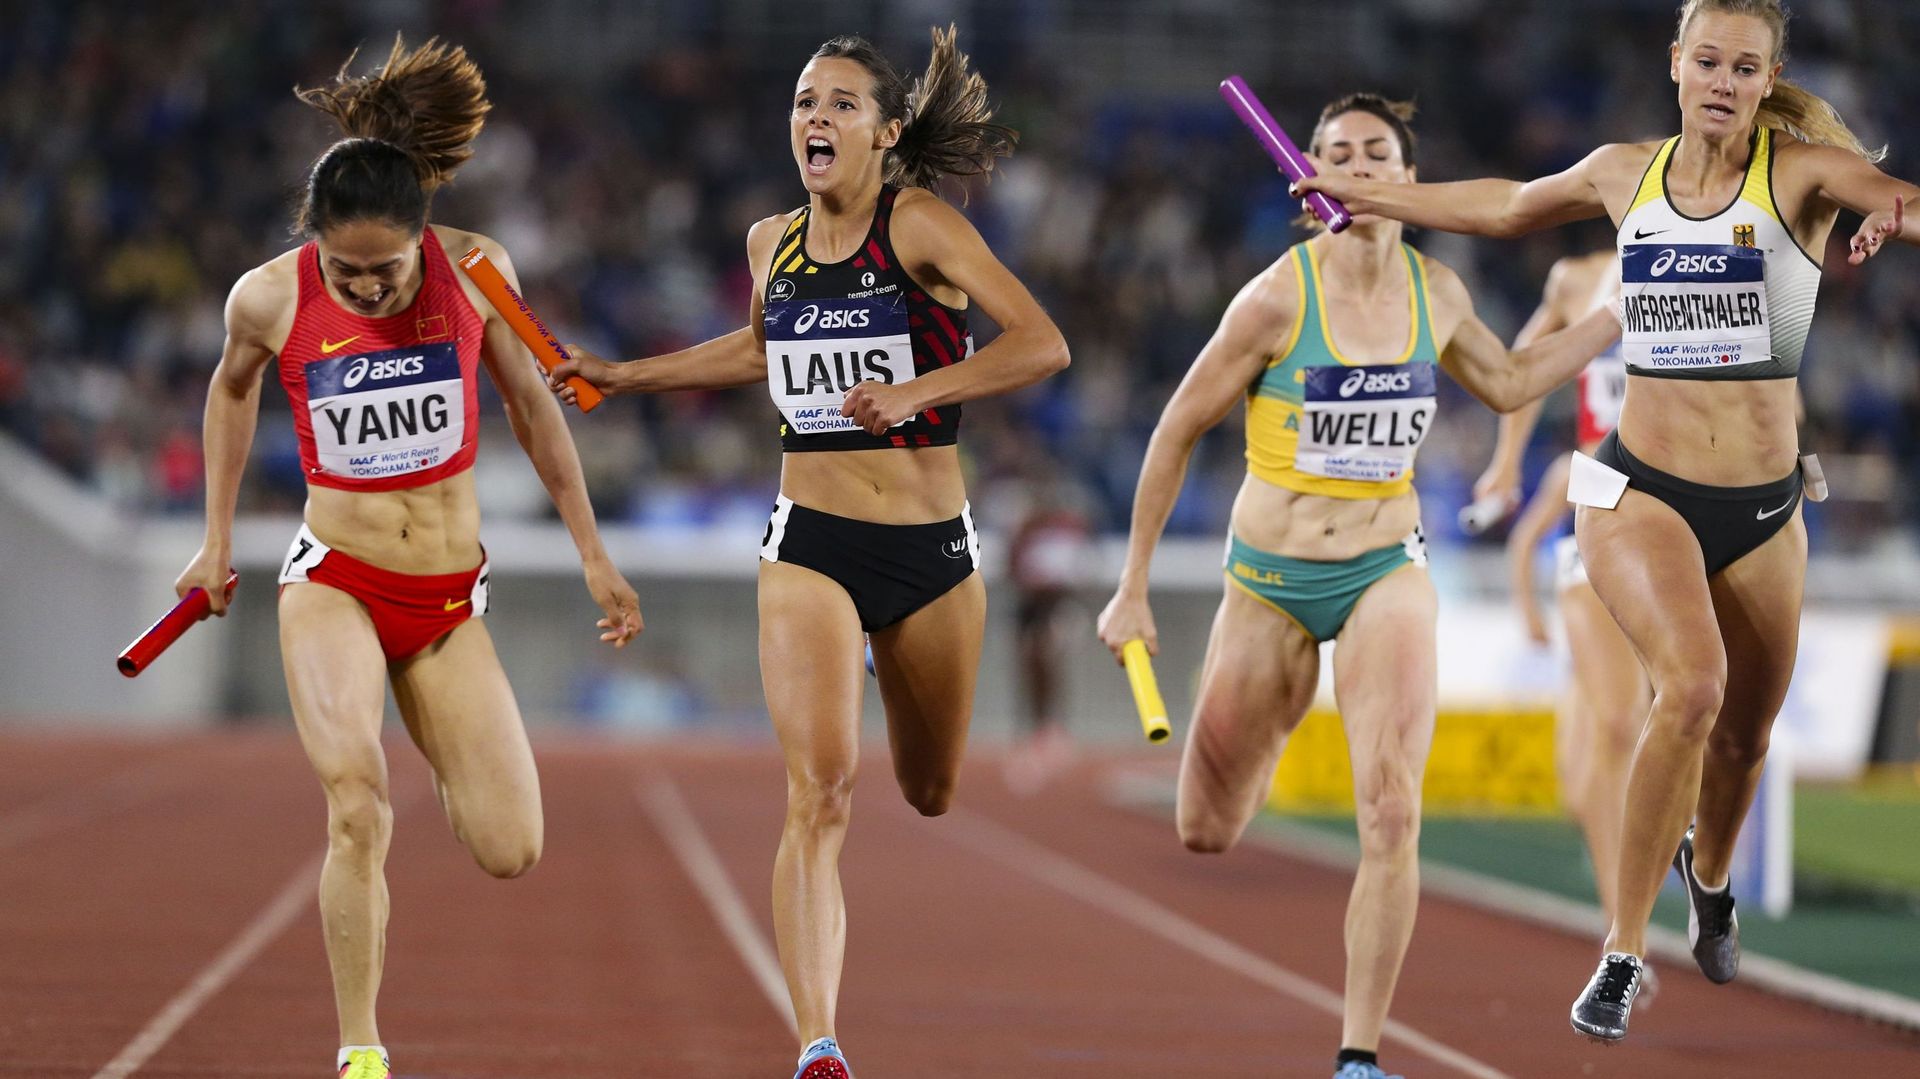 Camille Laus, la capitaine, qualifie la Belgique pour la finale A des mondiaux de relais 2019, ouvrant la voie vers les jeux olympiques